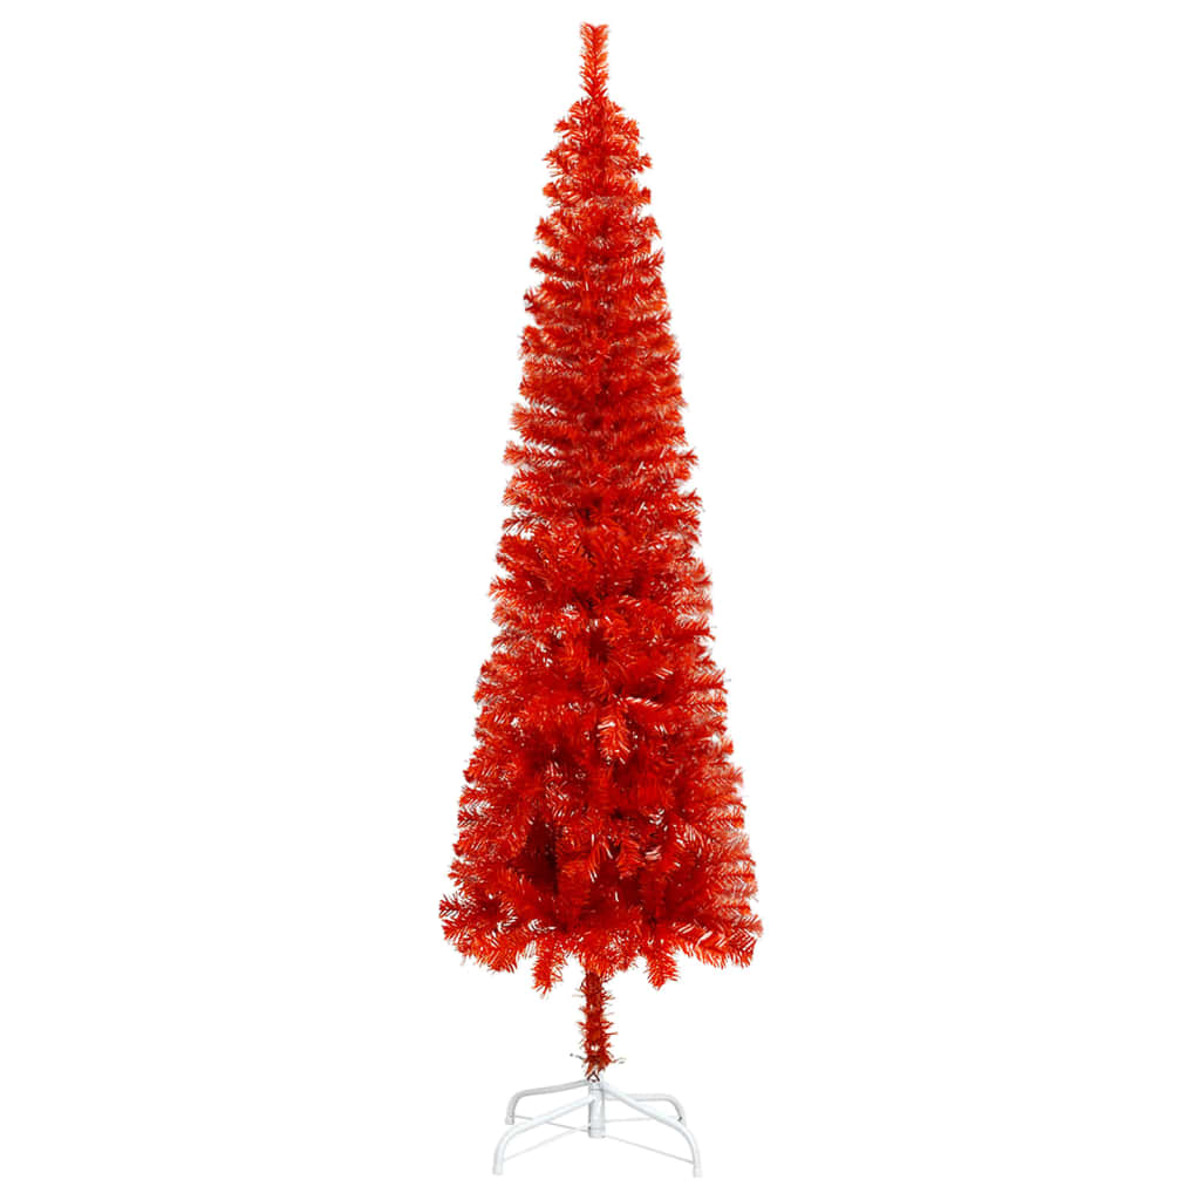 Weihnachtsbaum VIDAXL 329228